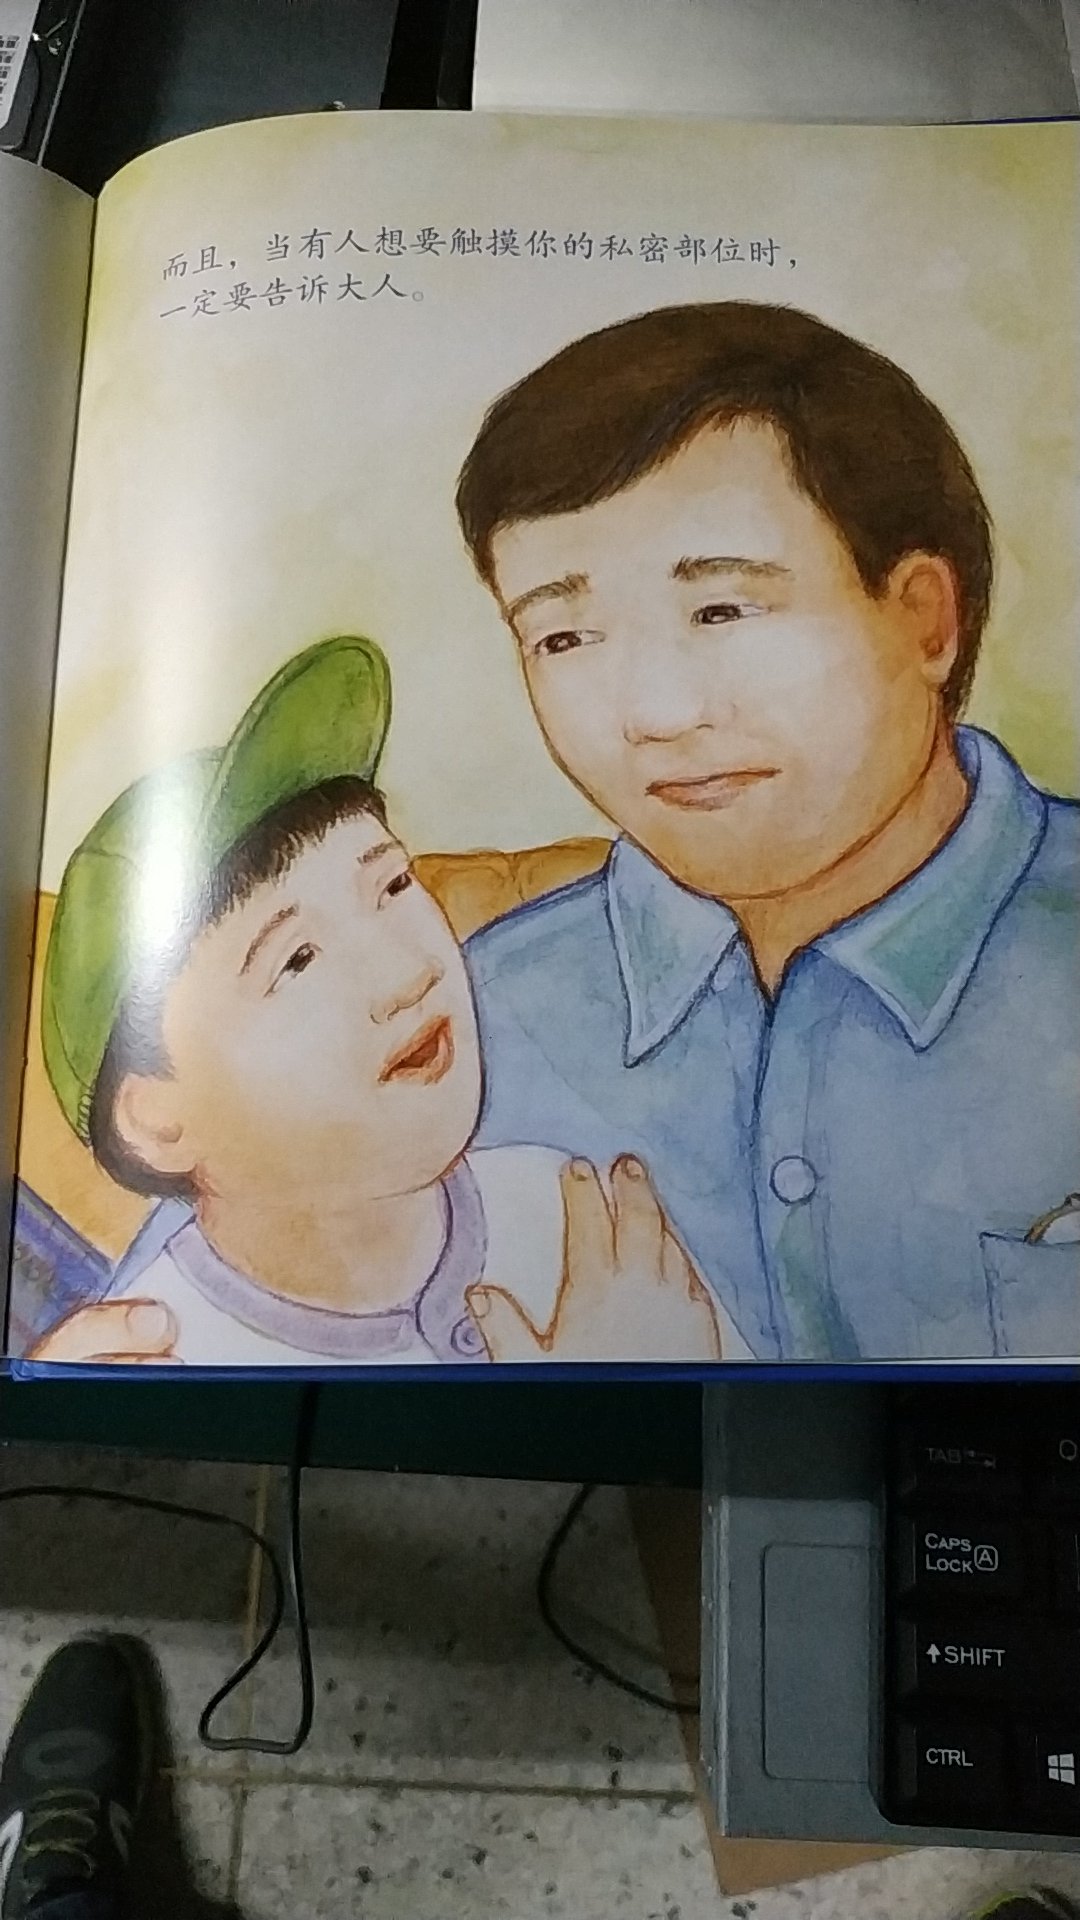 防范儿童性侵犯，不过我好奇的是，为什么美国人出的书，却画了一个亚洲怪叔叔呢。